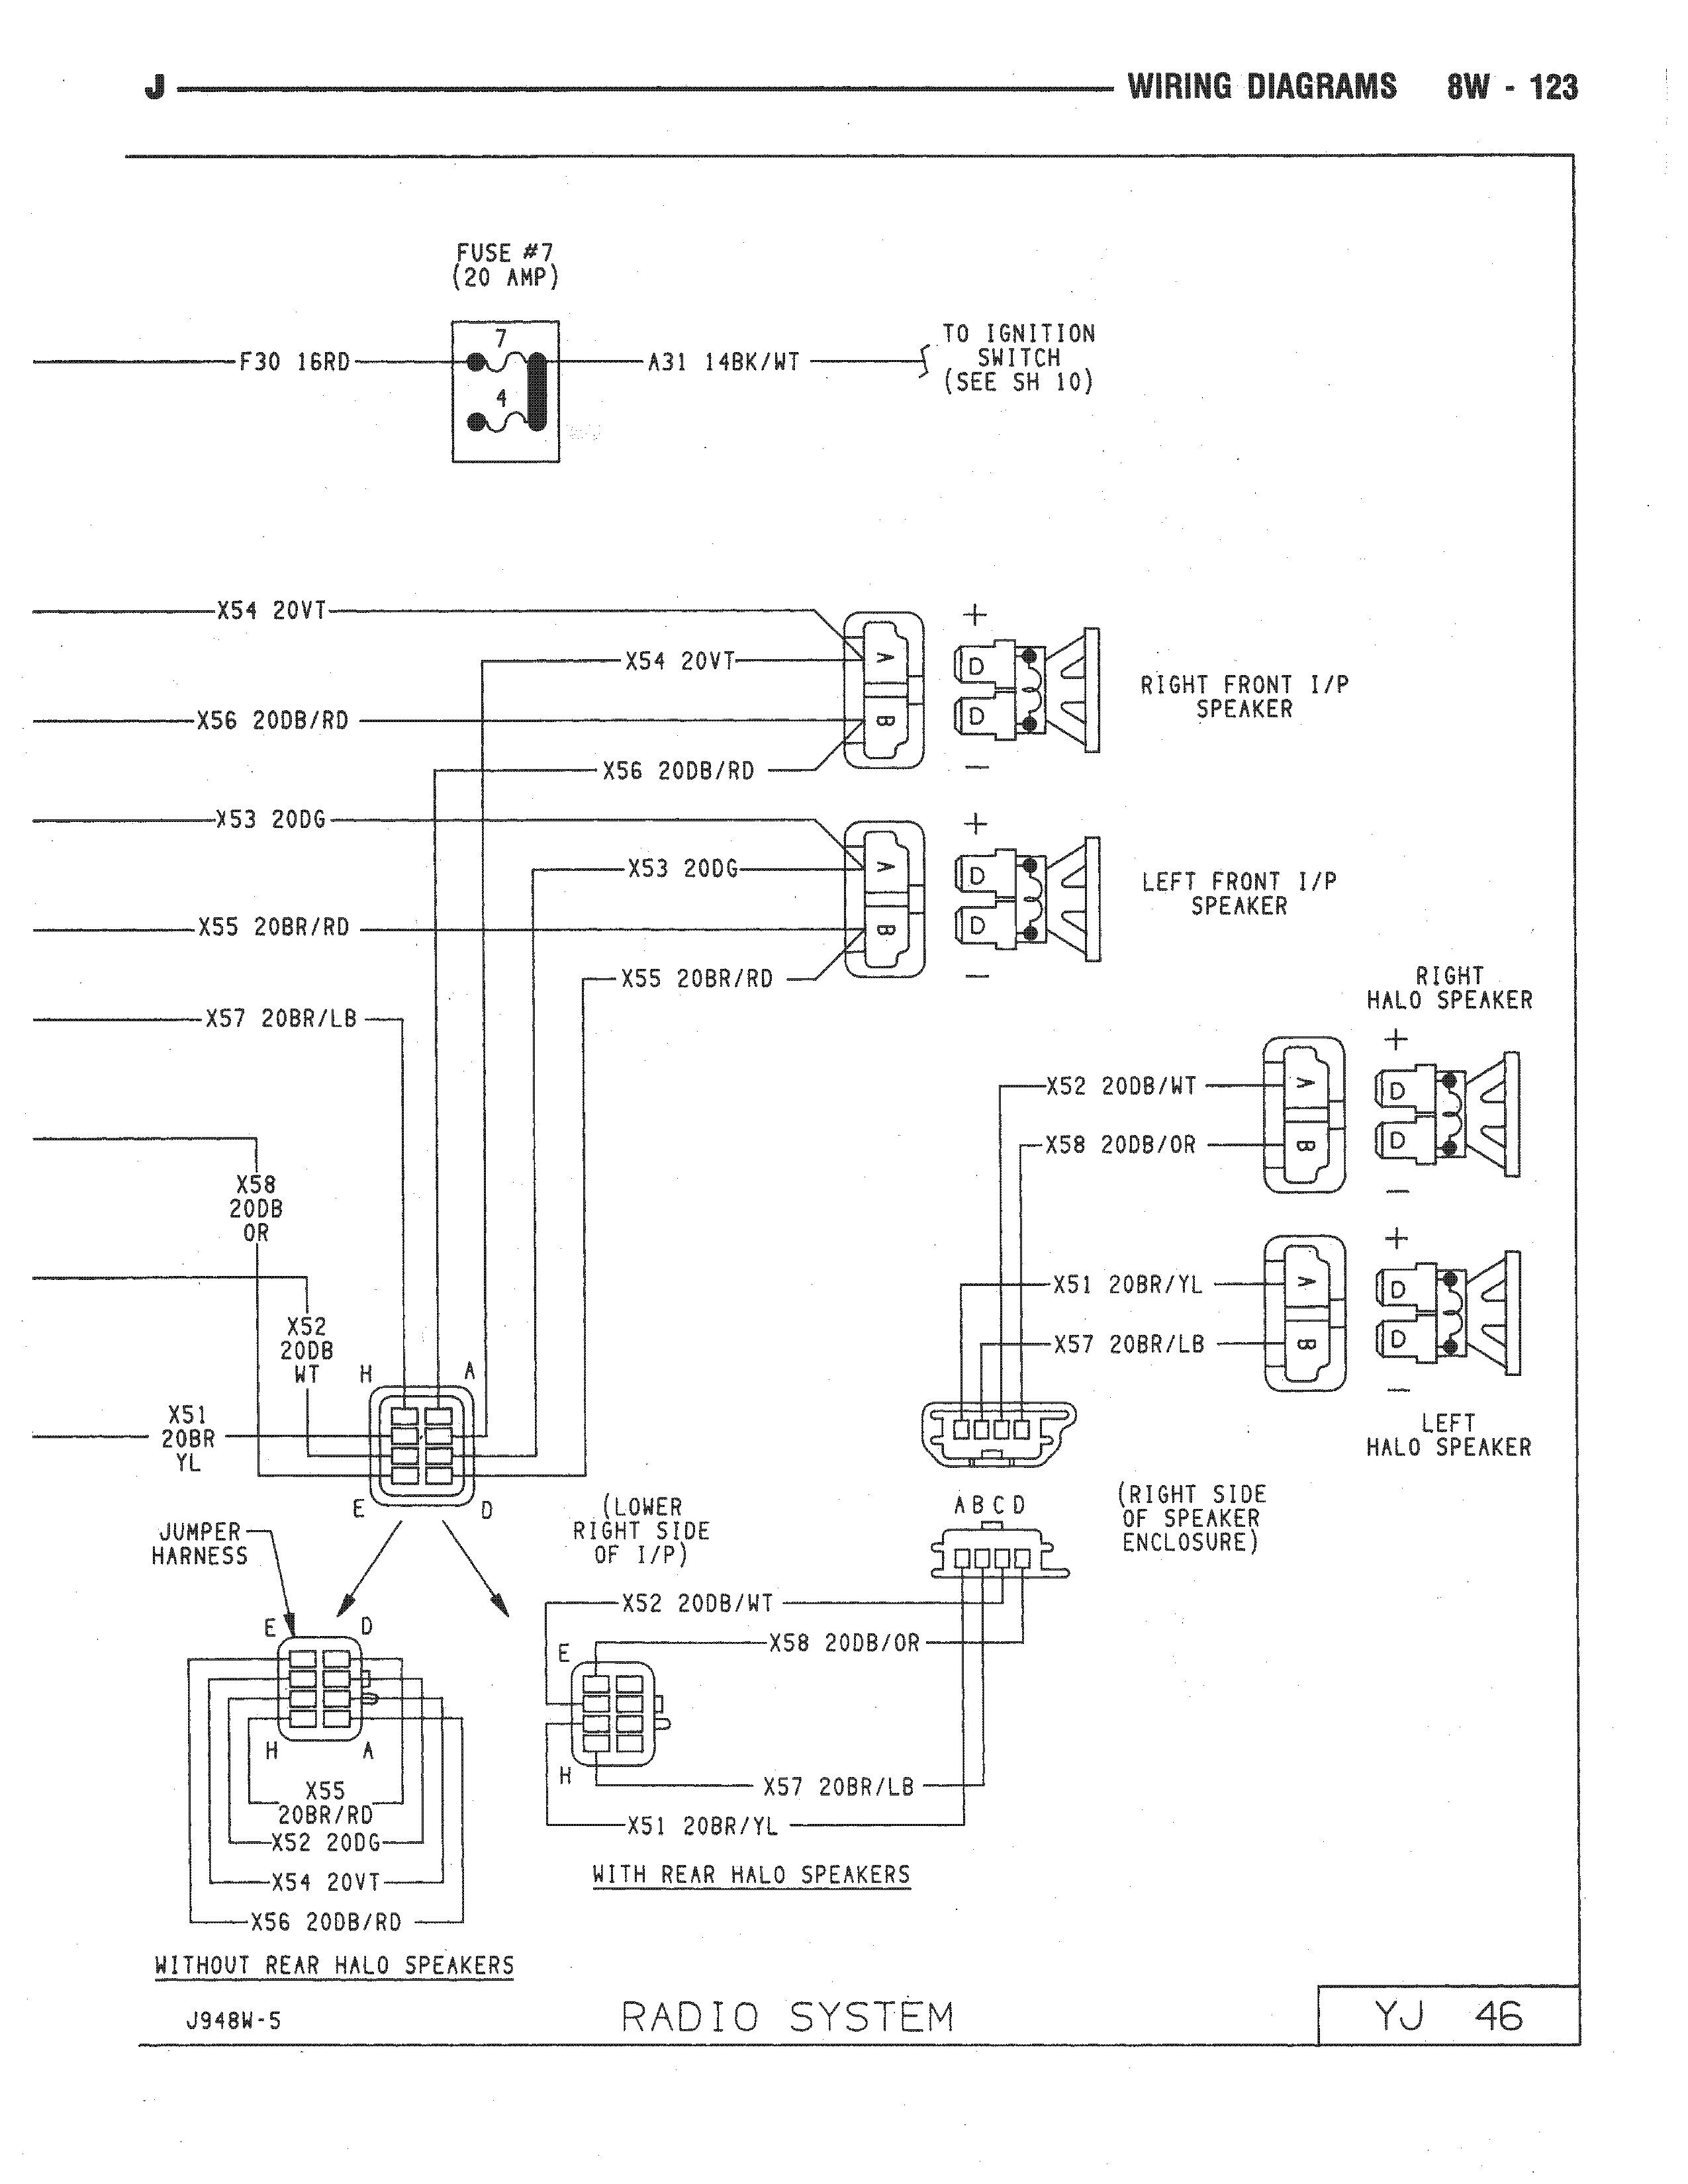 2001 Jeep Wrangler Wiring Diagram from detoxicrecenze.com